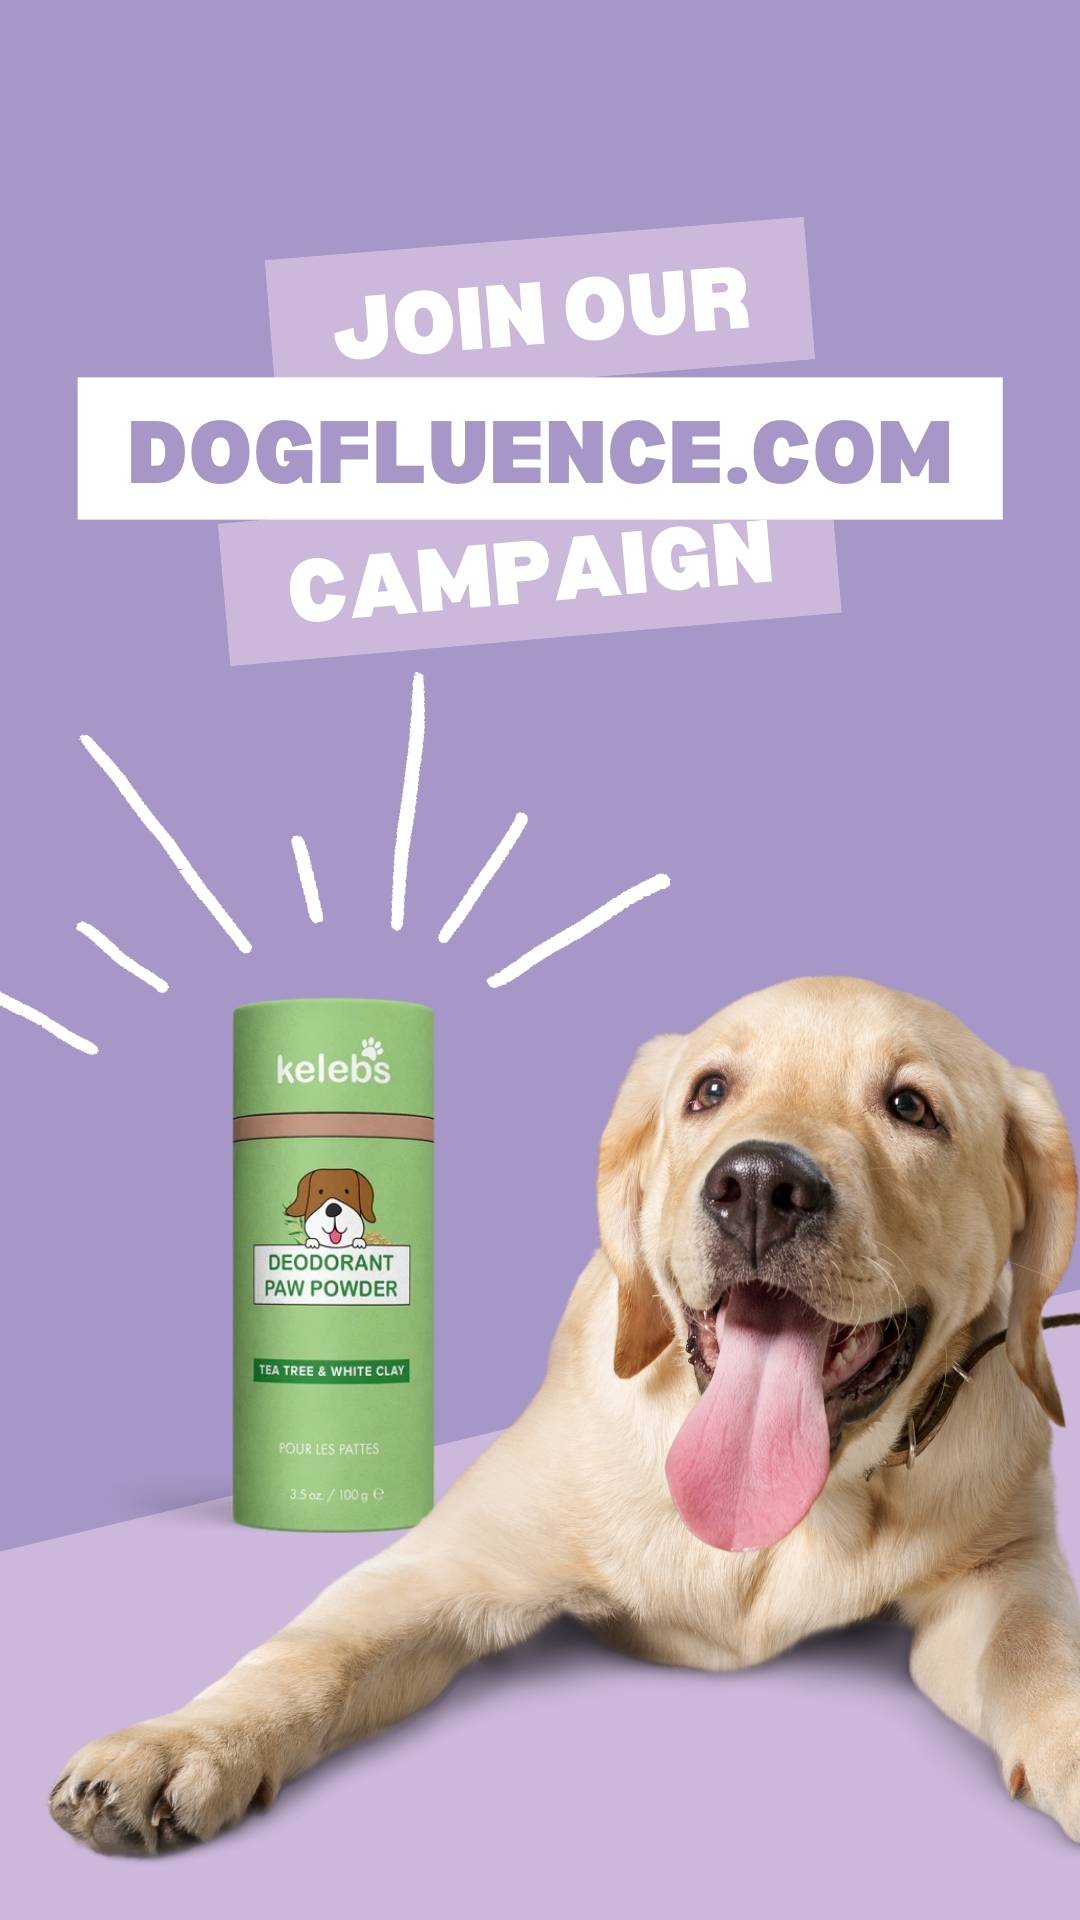 Instragram story - Dogfluence.com campaign promotion